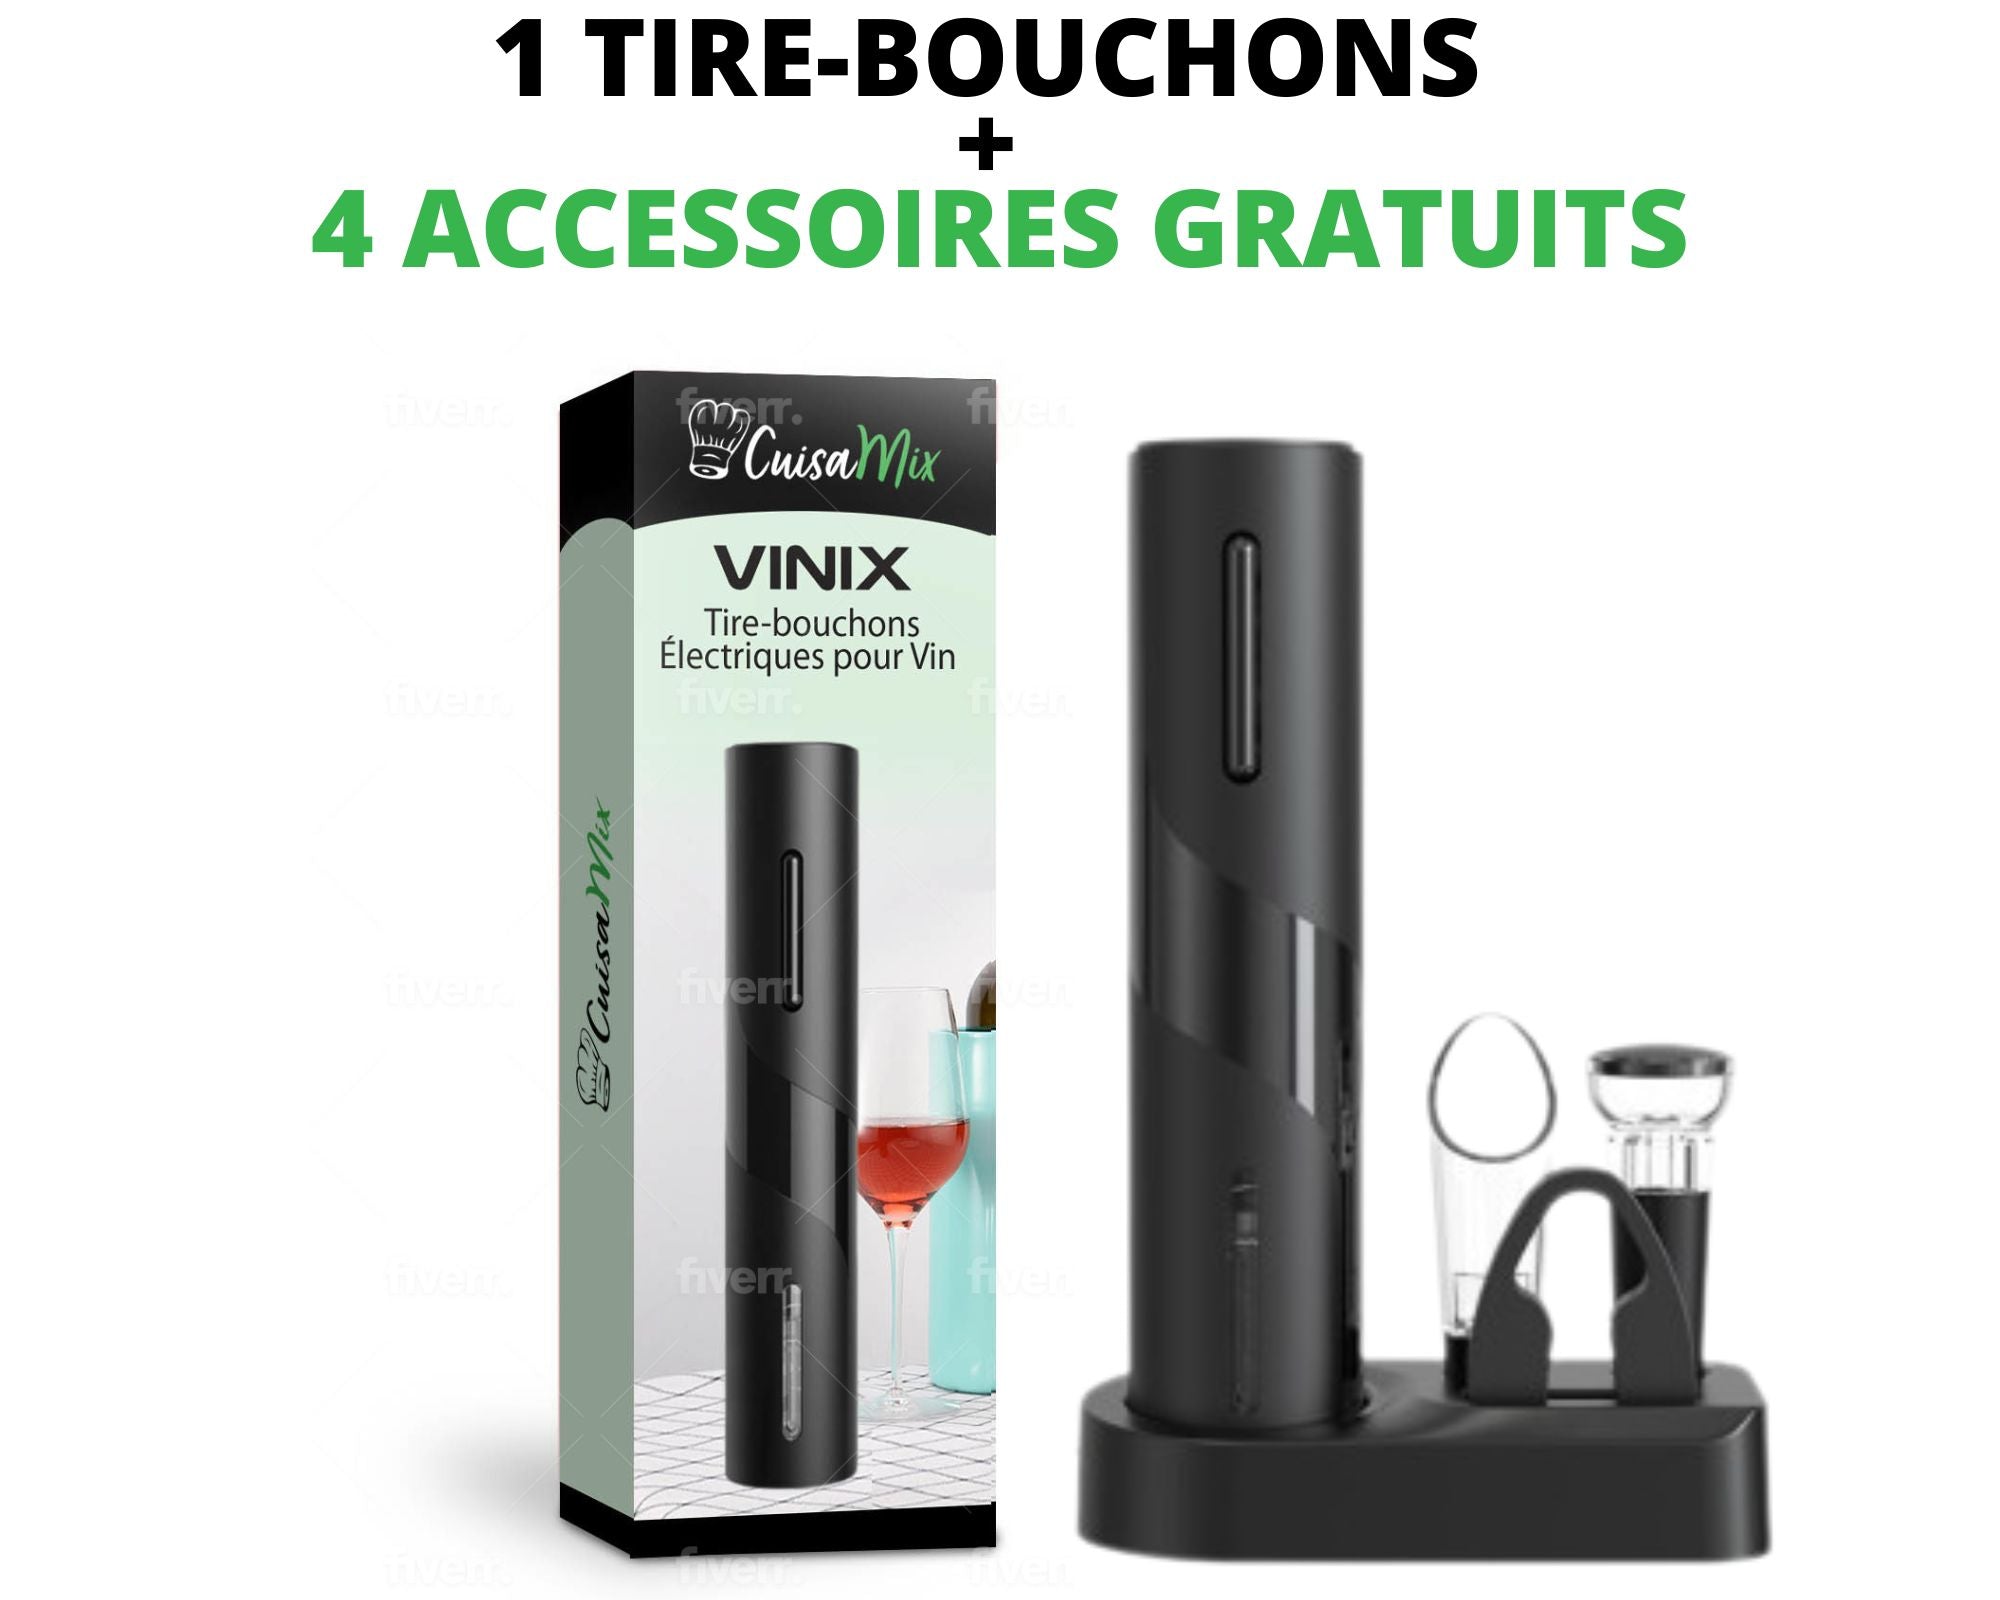 Vinix - Tire-bouchons Électriques pour Vin (+4 Accessoires OFFERTS)